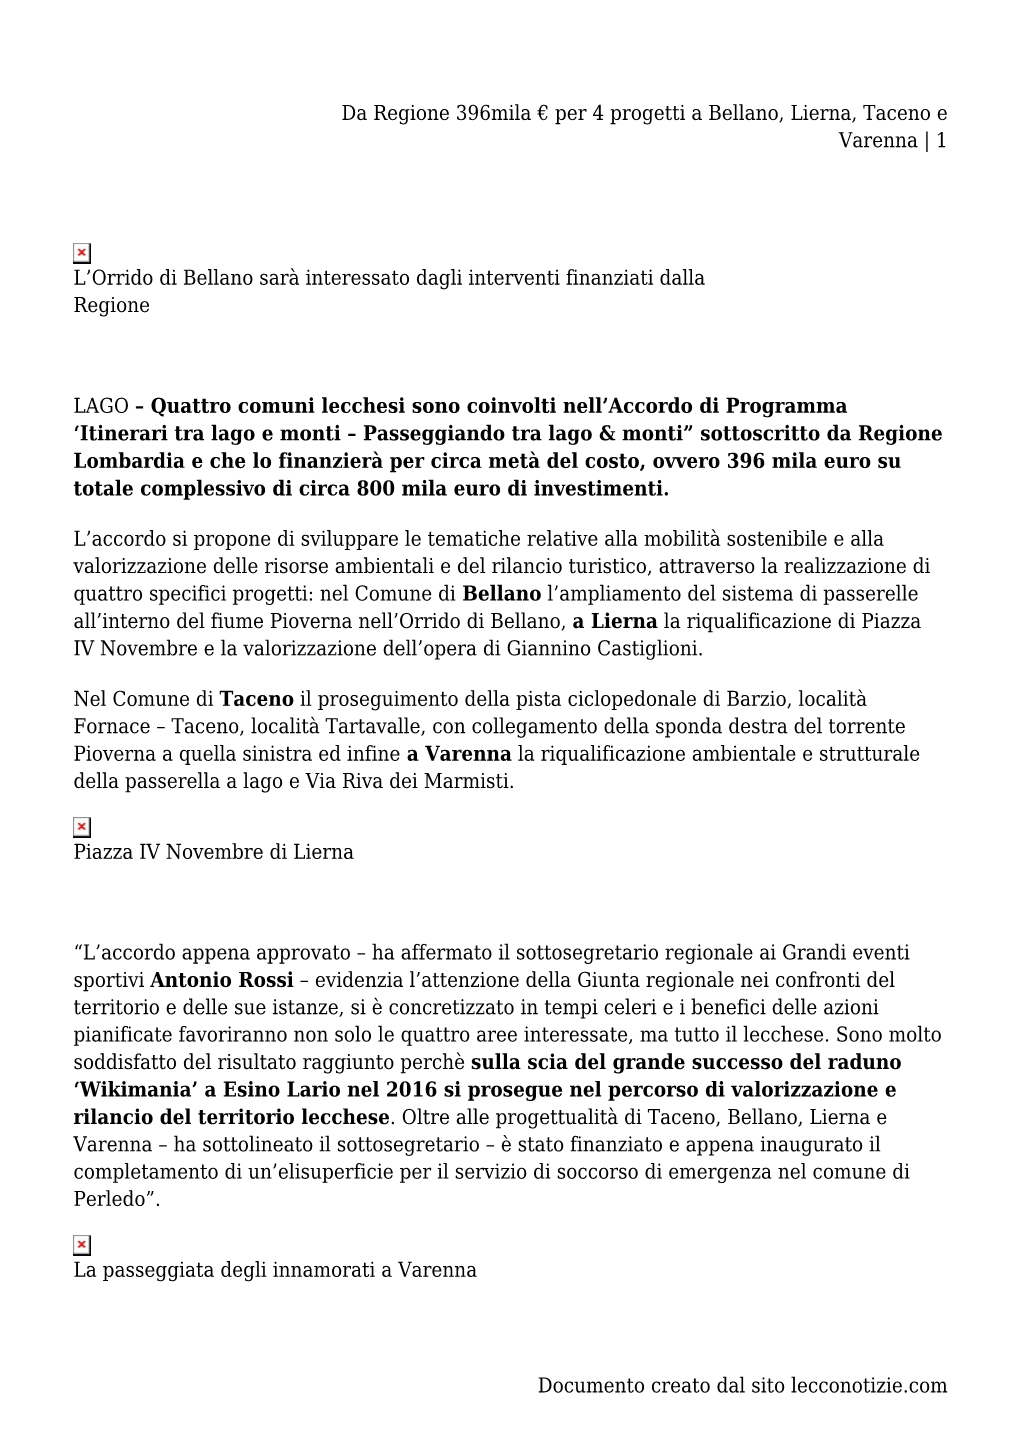 Da Regione 396Mila € Per 4 Progetti a Bellano, Lierna, Taceno E Varenna | 1